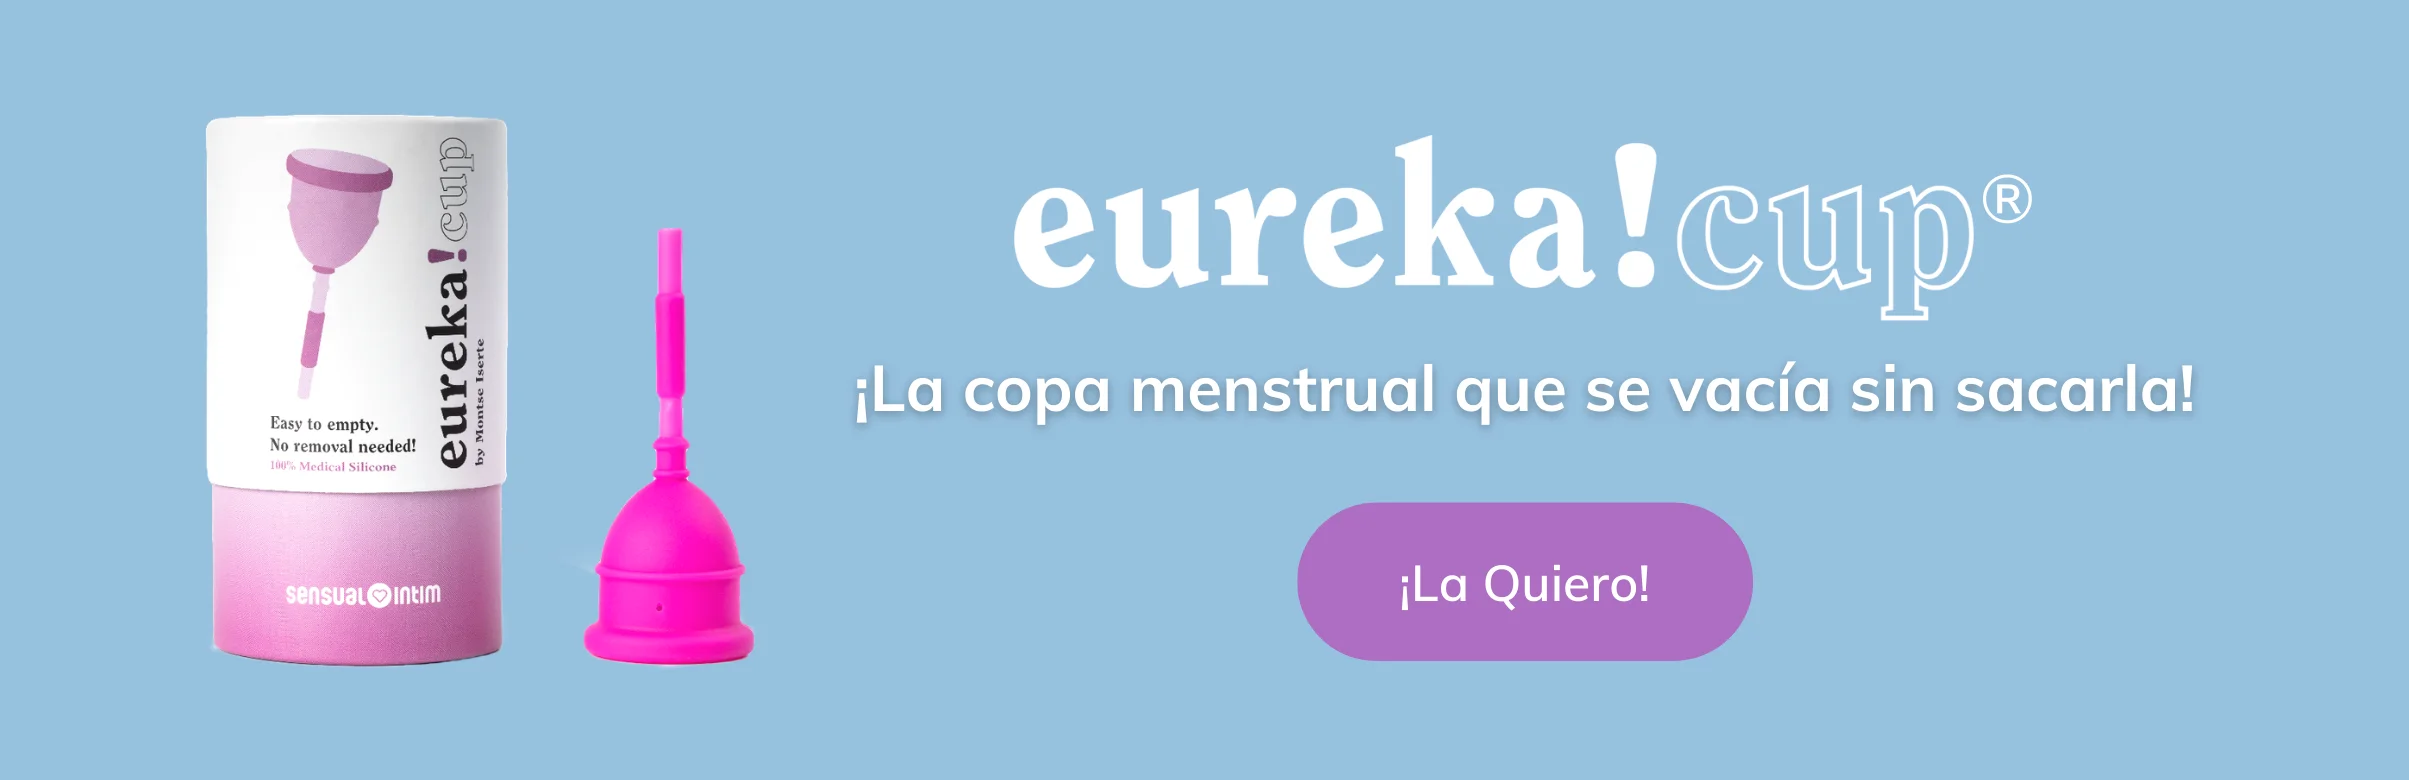 eureka cup La copa menstrual que se vacía sin sacarla | sensual intim